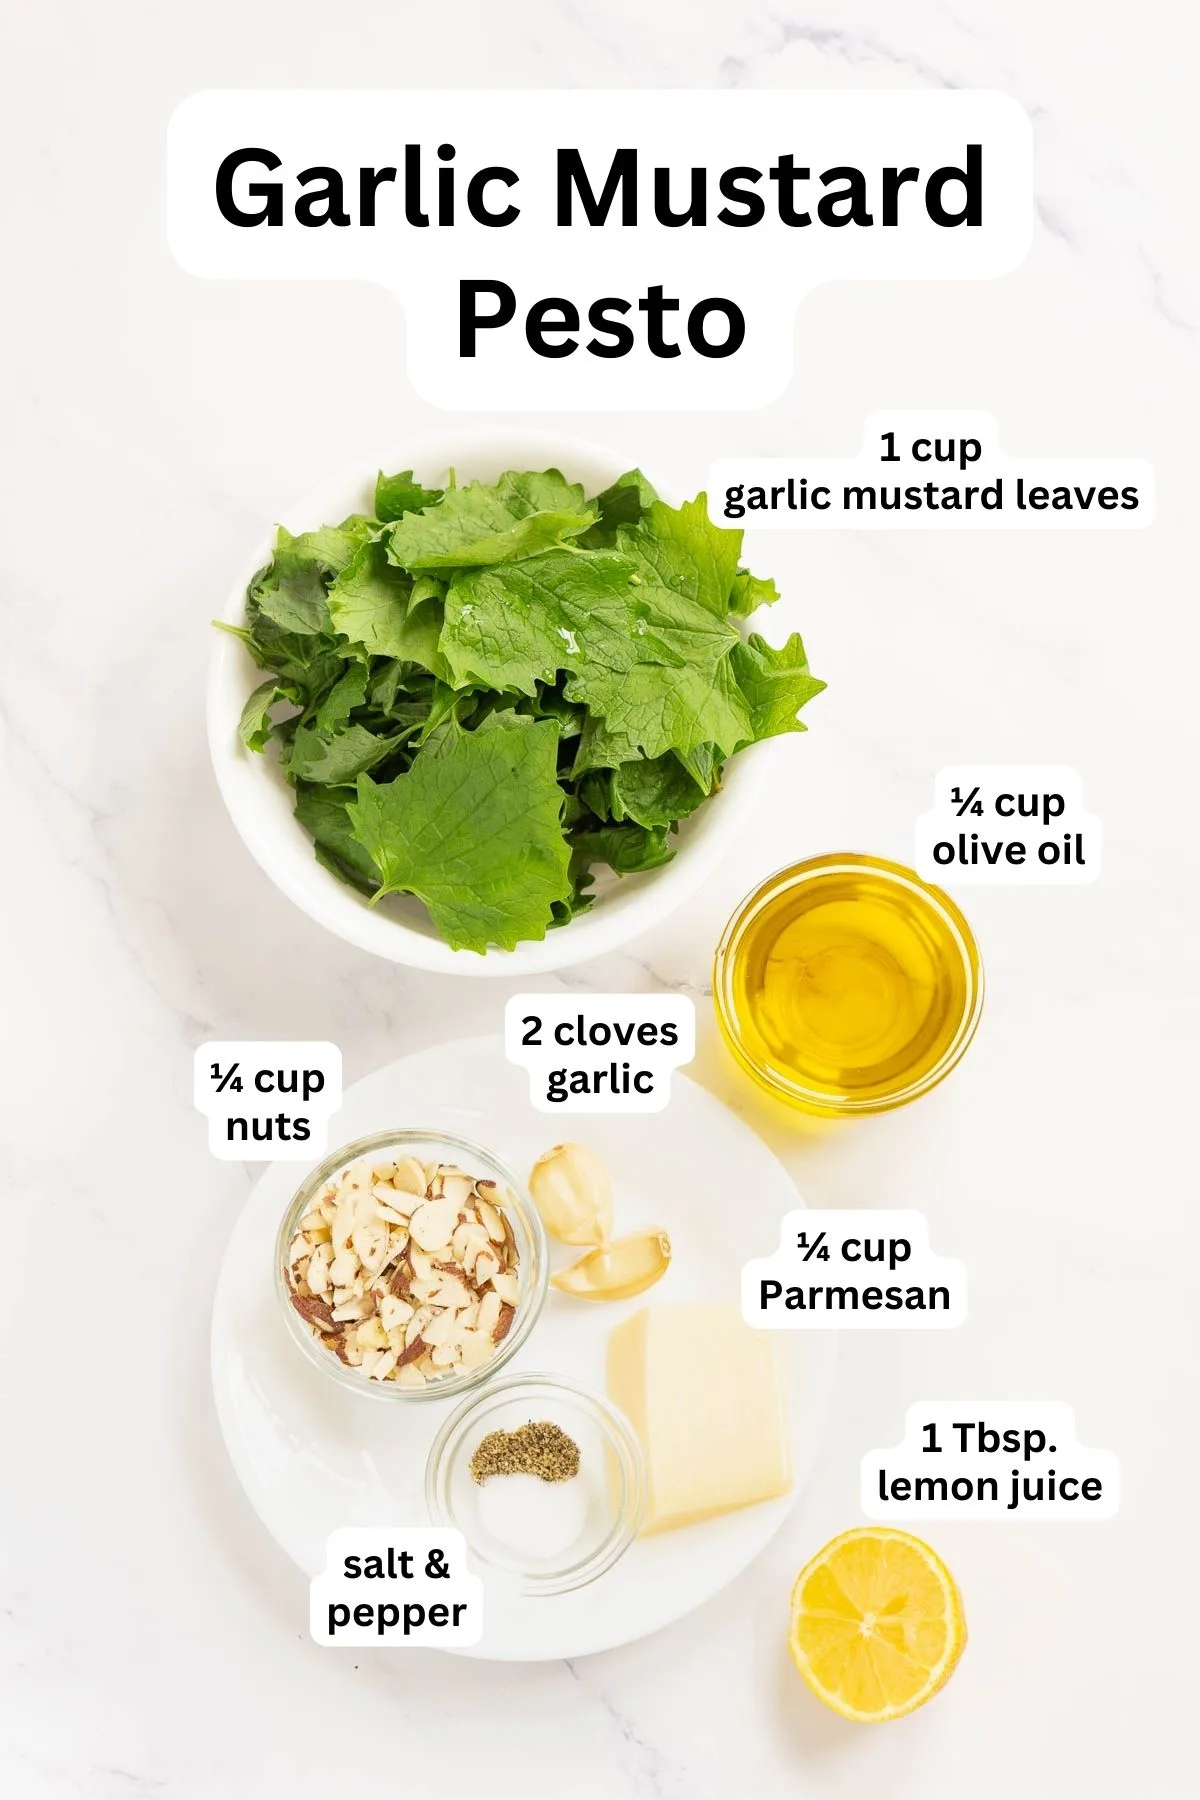 Ingredients to make garlic mustard pesto